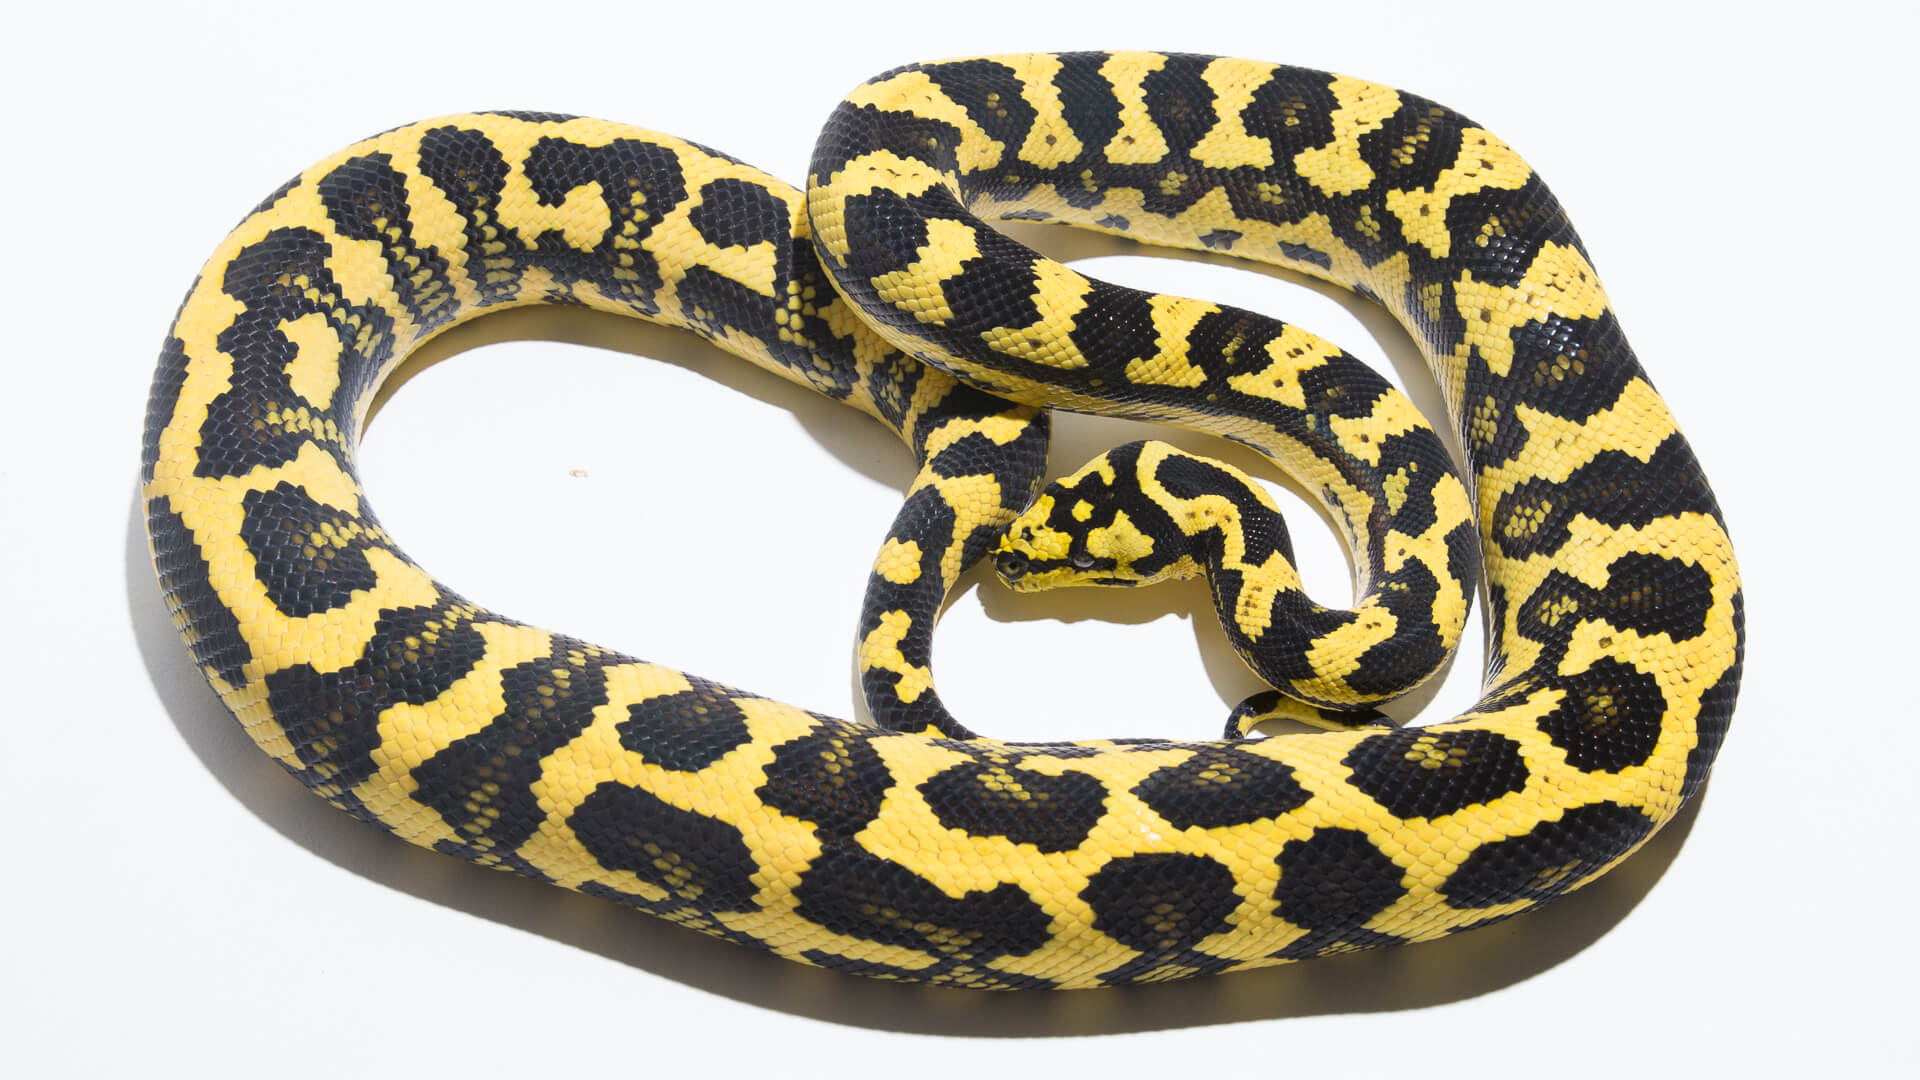 Morelia spilota cheynei - Jungle Carpet Python.